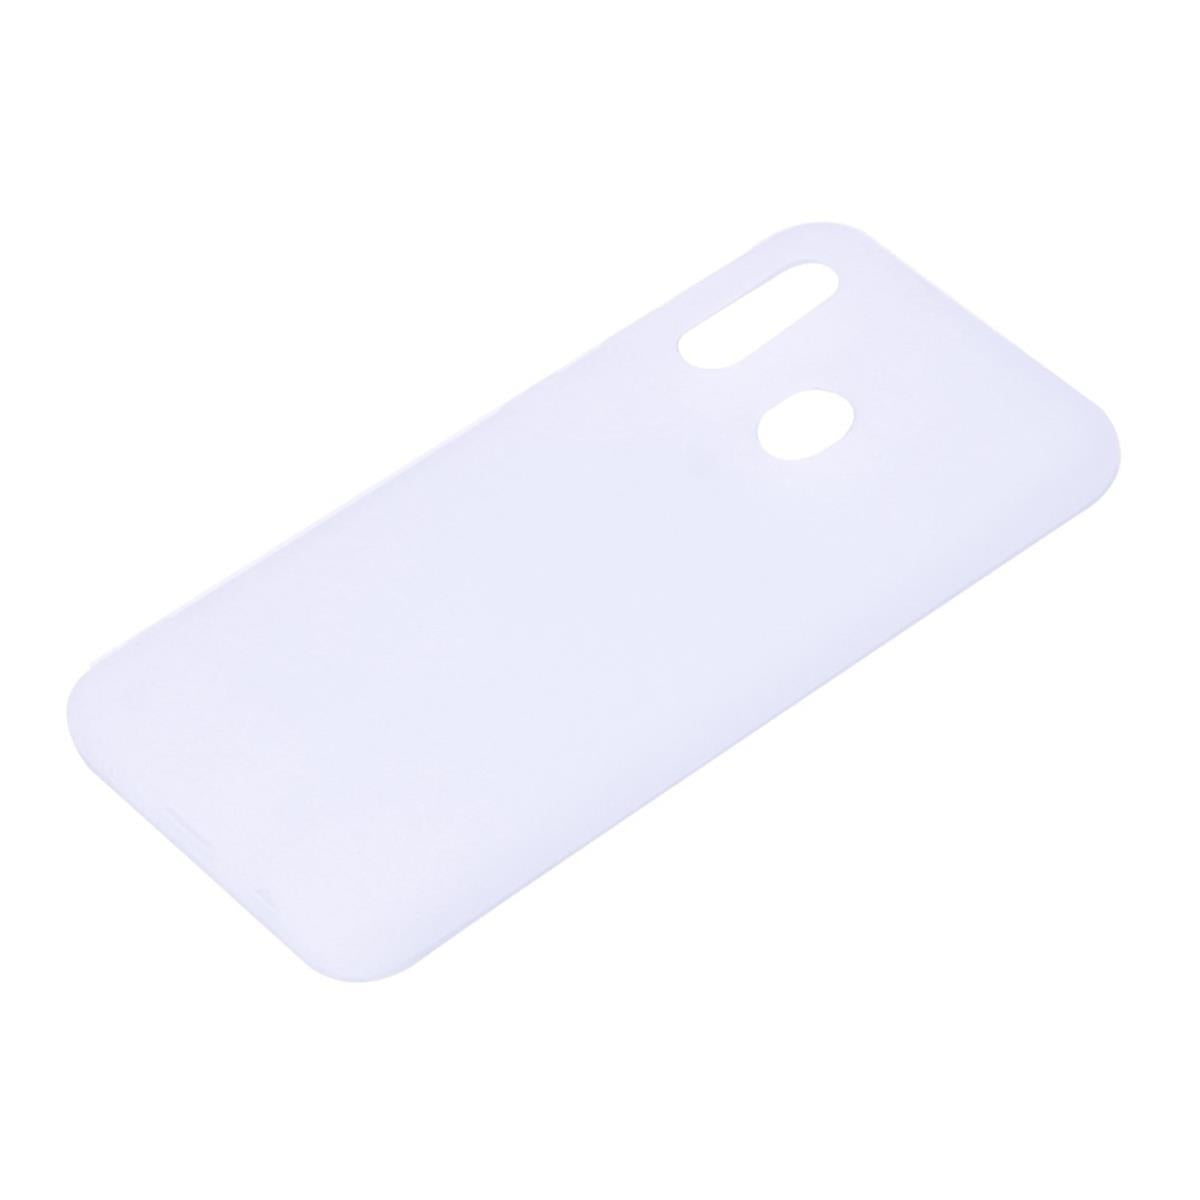 Hülle für Samsung Galaxy A20e Handyhülle Silikon Cover Schutzhülle Soft Case matt Weiß